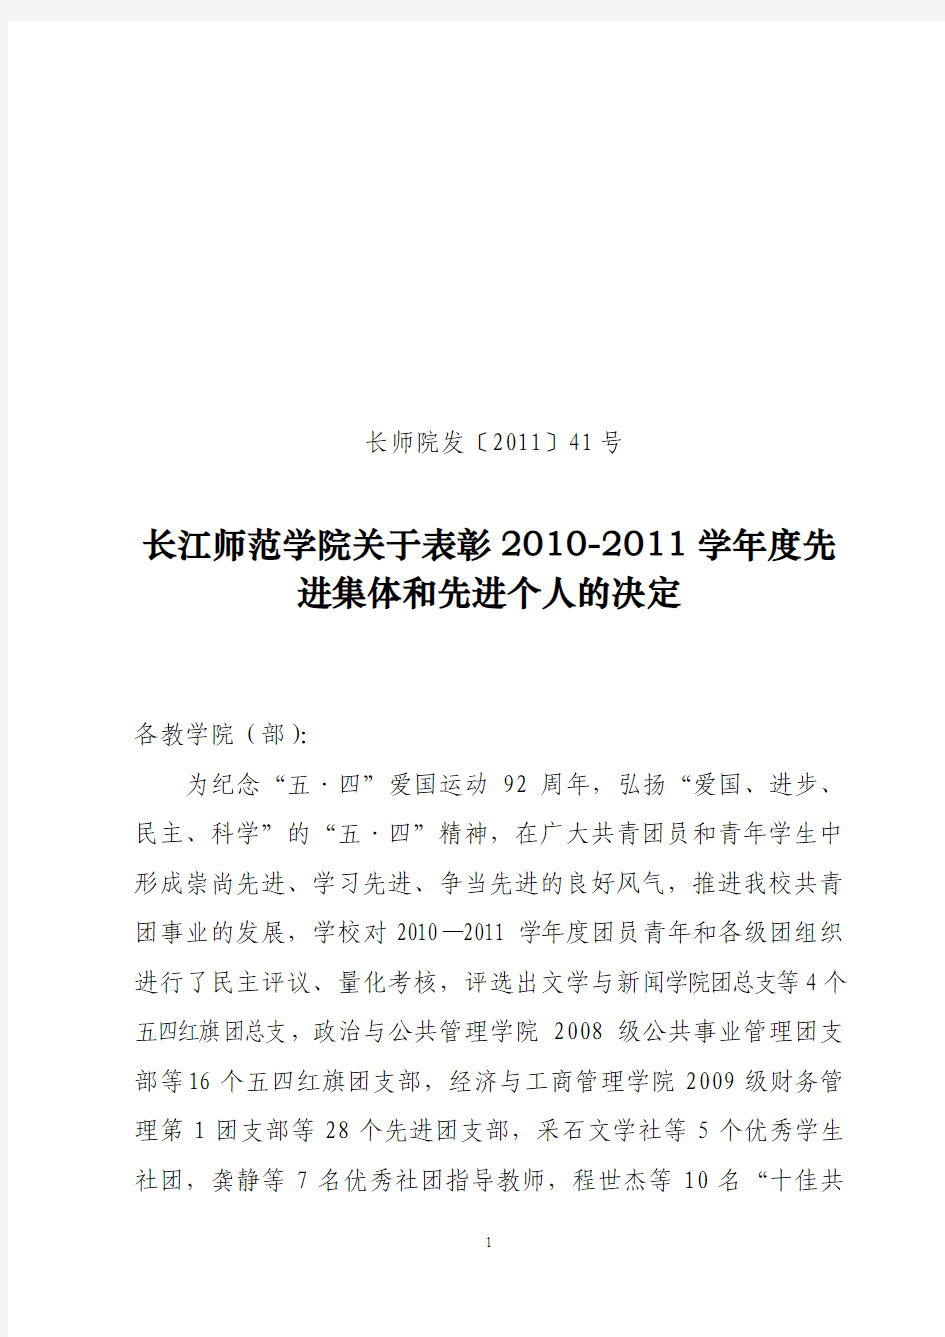 长江师范学院关于表彰2010-2011学年度先进集体和先进个人的决定